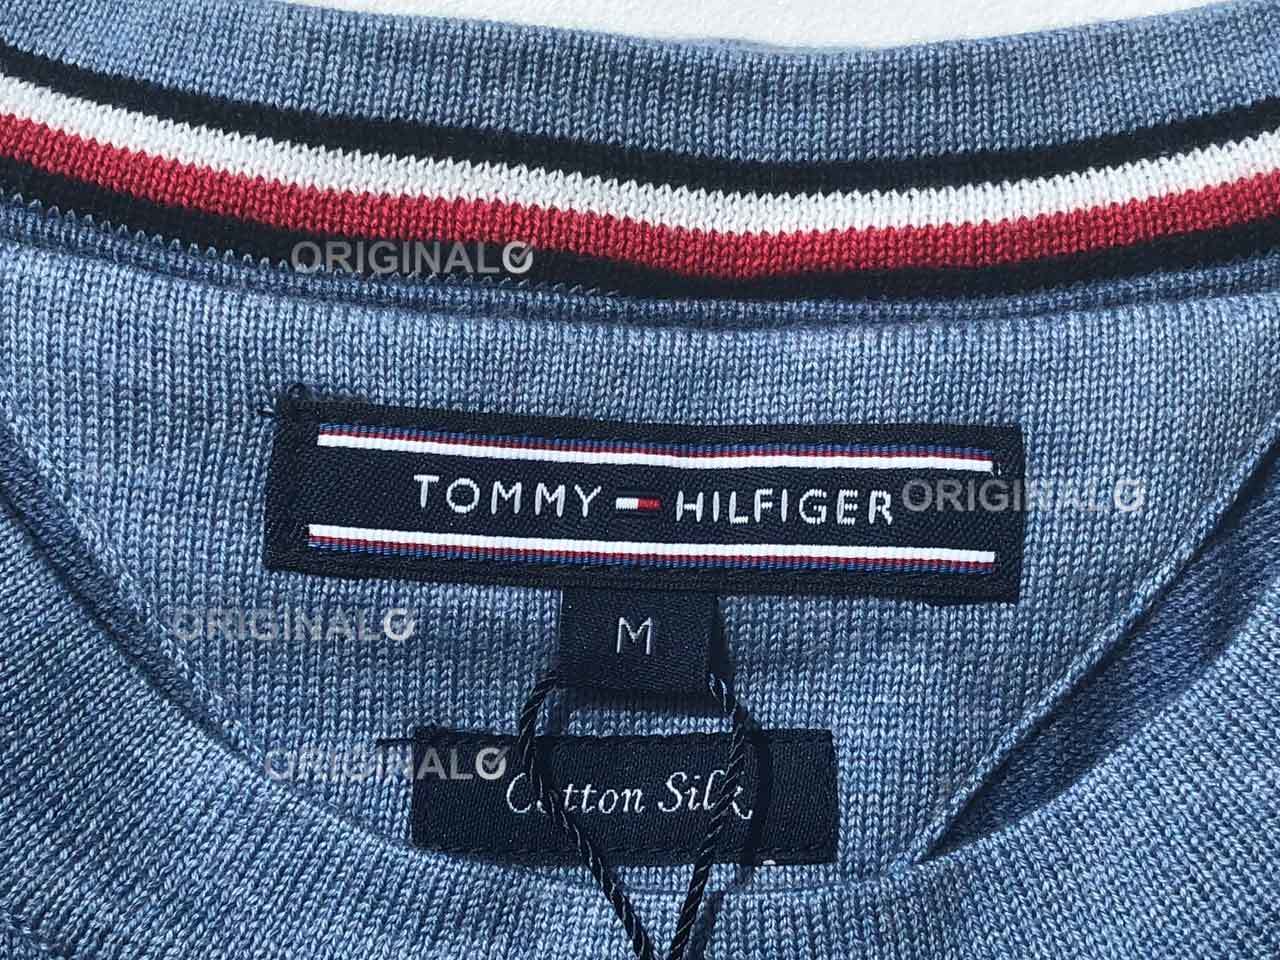 tommy hilfiger jeans house of fraser